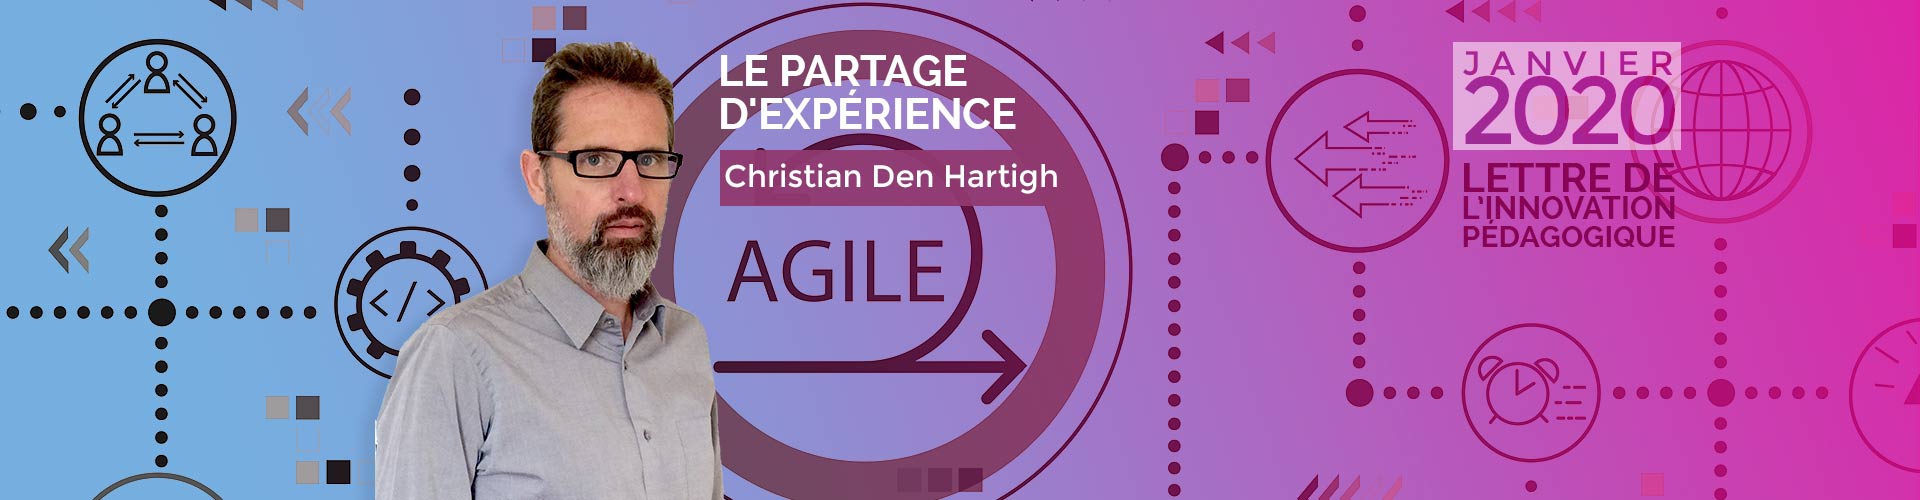 Pédagogie agile par Christian Den Hartigh